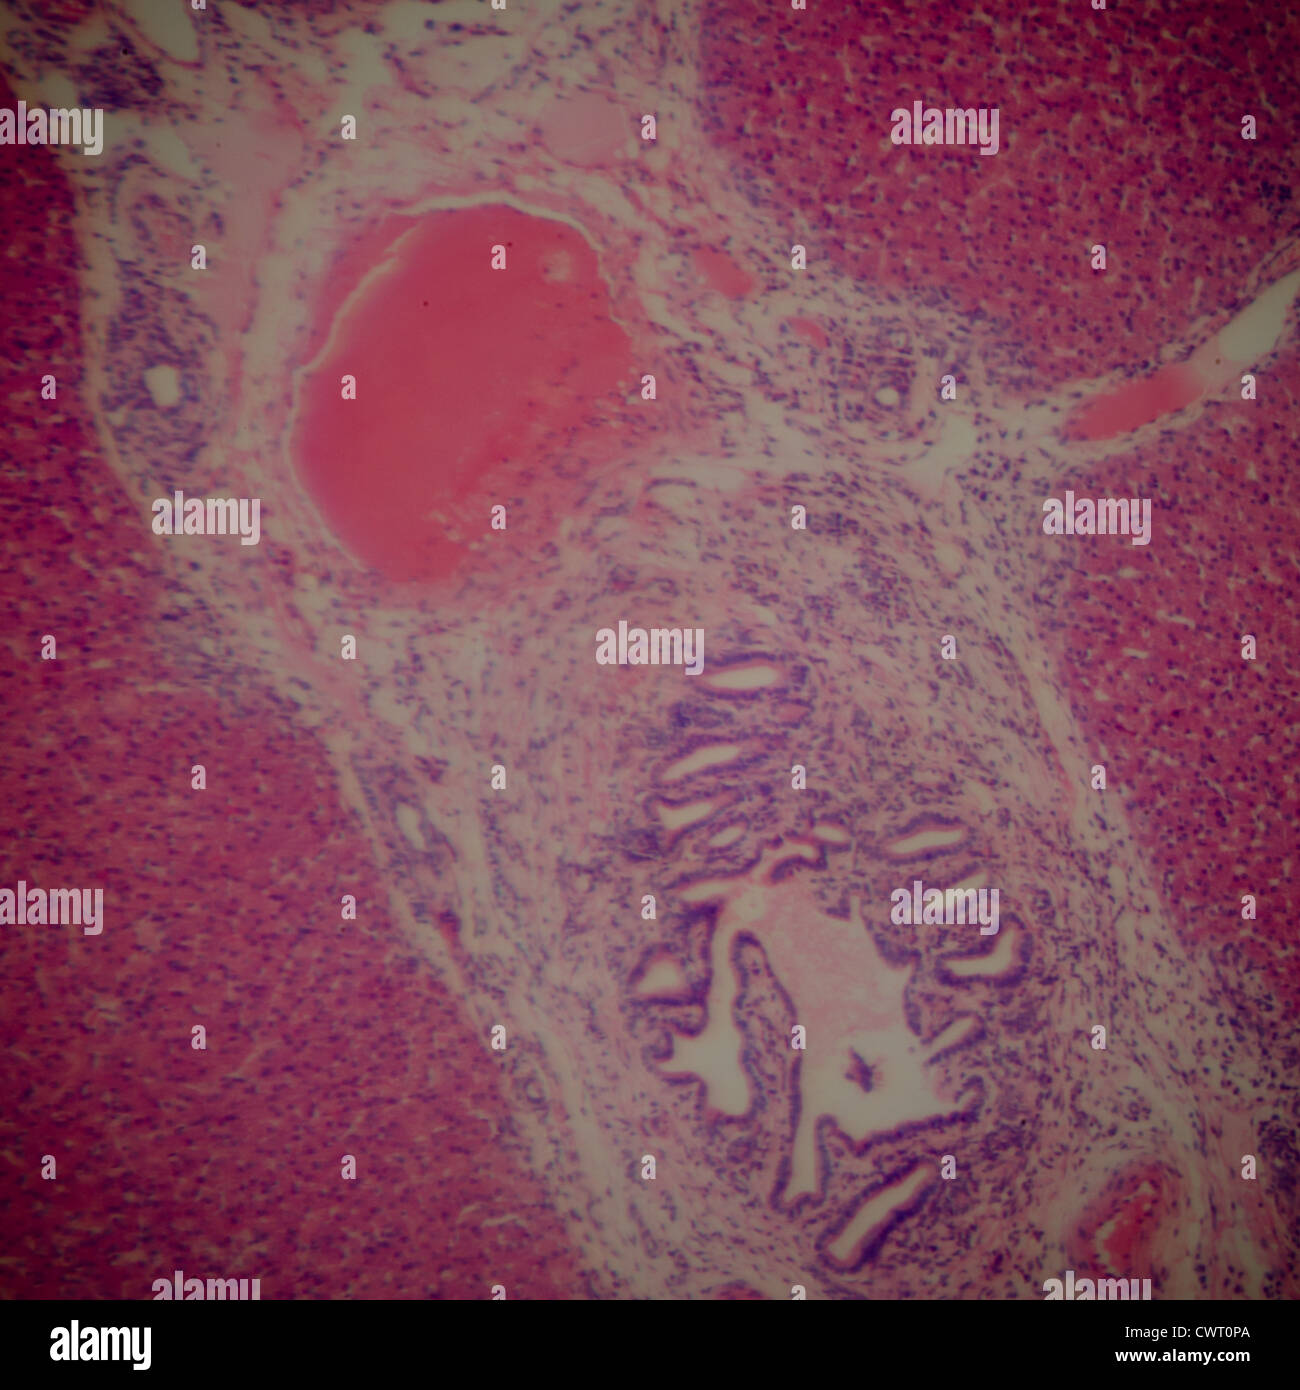 Liver cells -Fotos und -Bildmaterial in hoher Auflösung - Seite 2 - Alamy